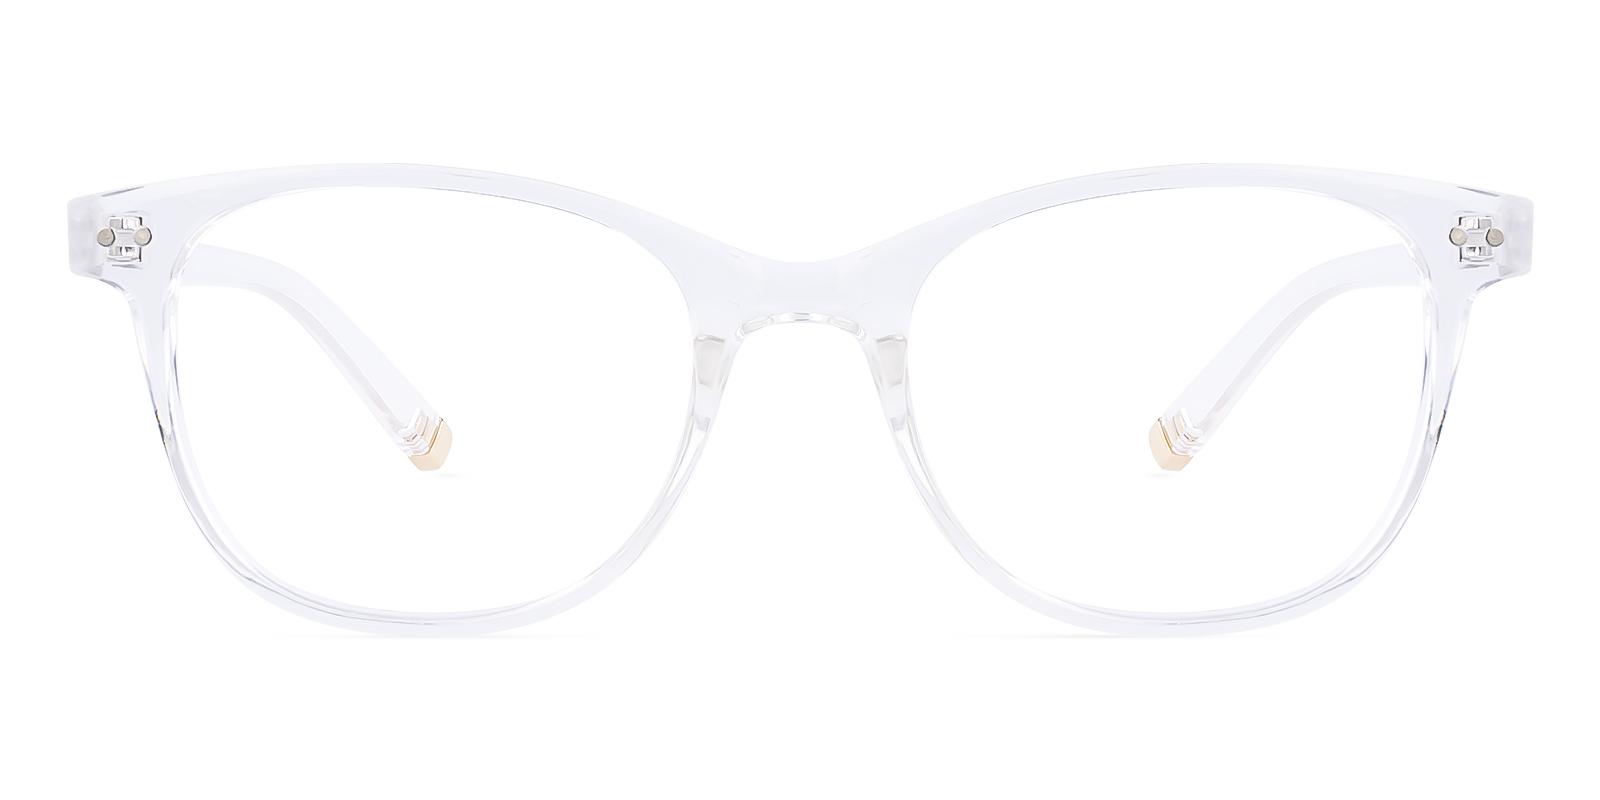 Vesic Fclear Plastic Eyeglasses , UniversalBridgeFit Frames from ABBE Glasses